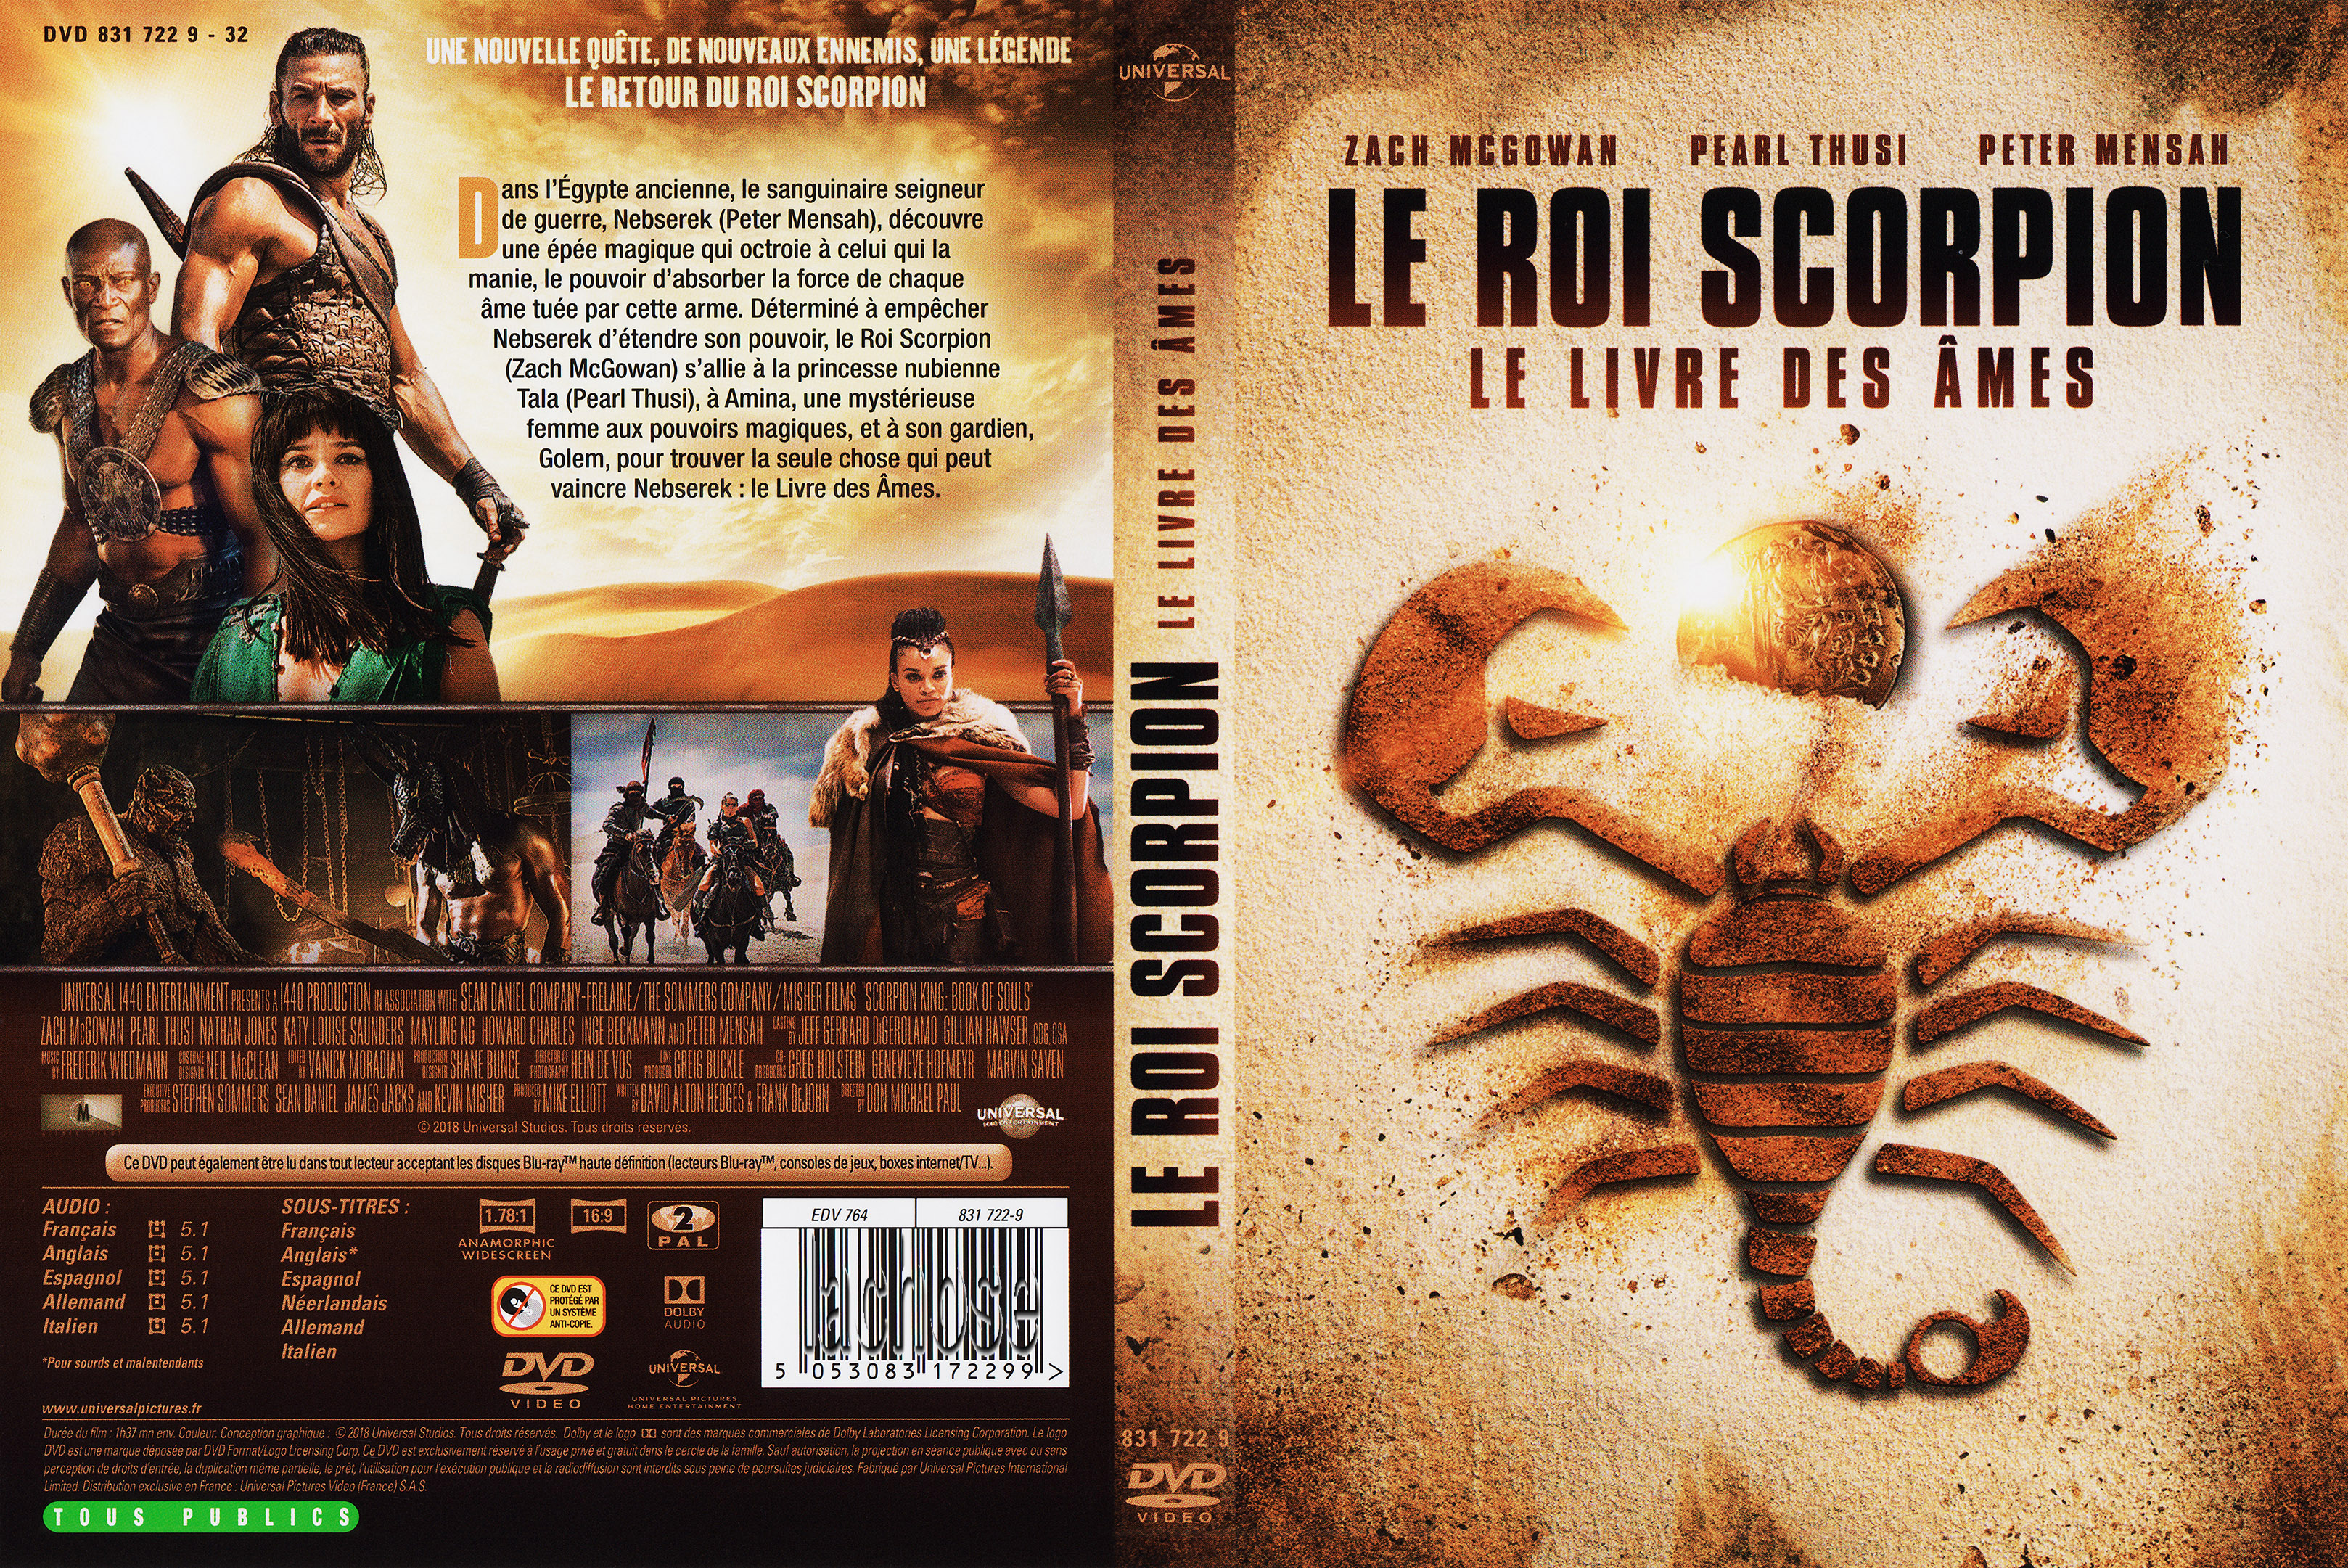 Jaquette DVD Le roi scorpion 5 le livre des mes